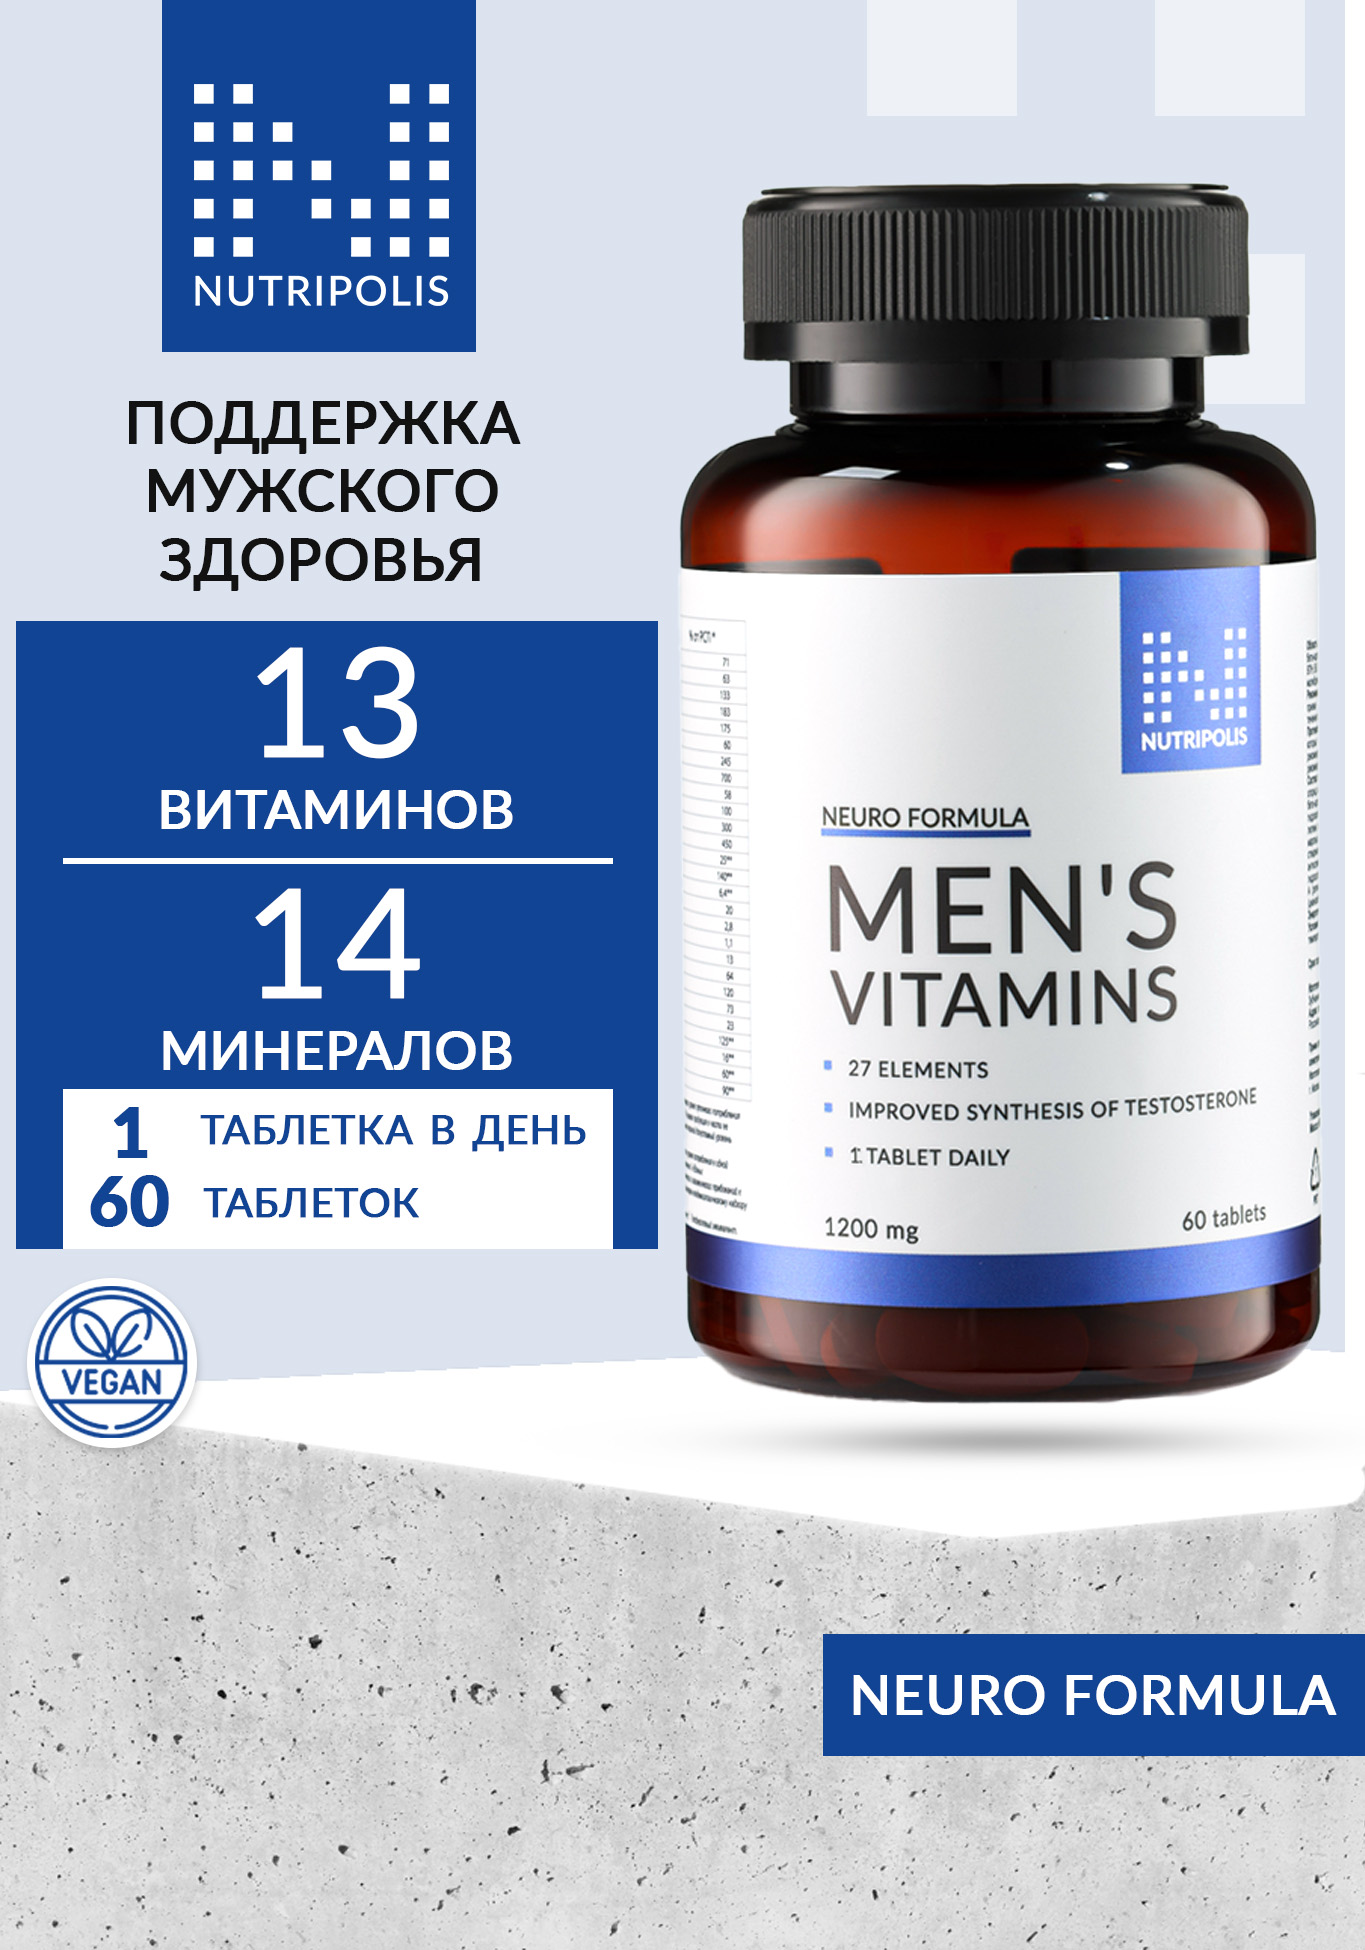 Men vitamin`s (Витамины для мужчин) NUTRIPOLIS - фото 1